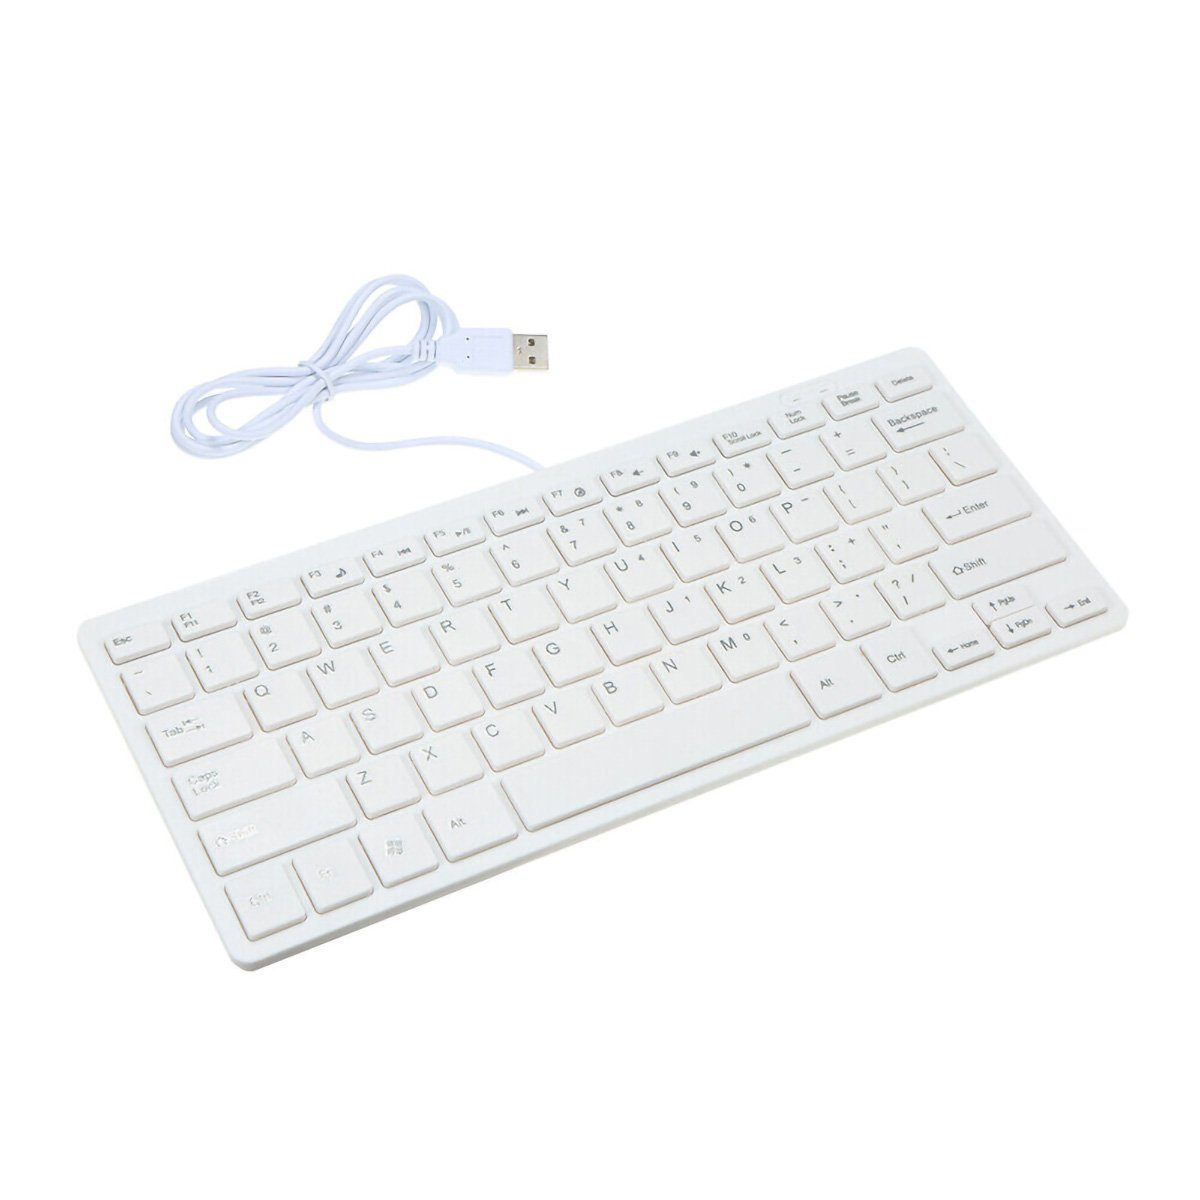 yozhiqu USB-Mini-Tastatur mit Kabel, kleine Tastatur Tastatur (78 Tasten, für PC, Desktop, Laptop, Weiß)